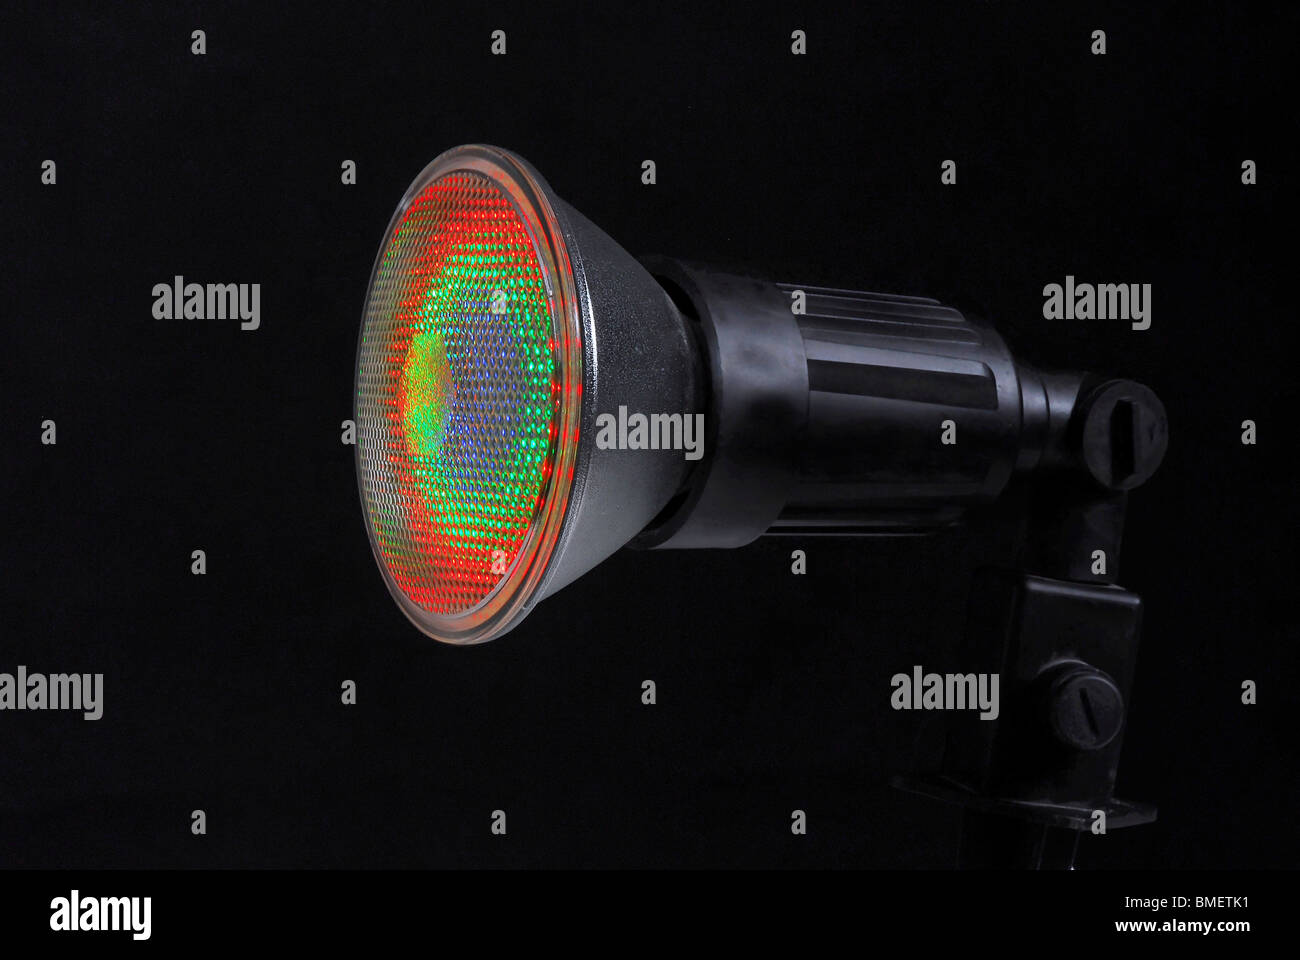 Encendido el LED (Light Emitting Diode) Spotlight sobre fondo negro Foto de stock